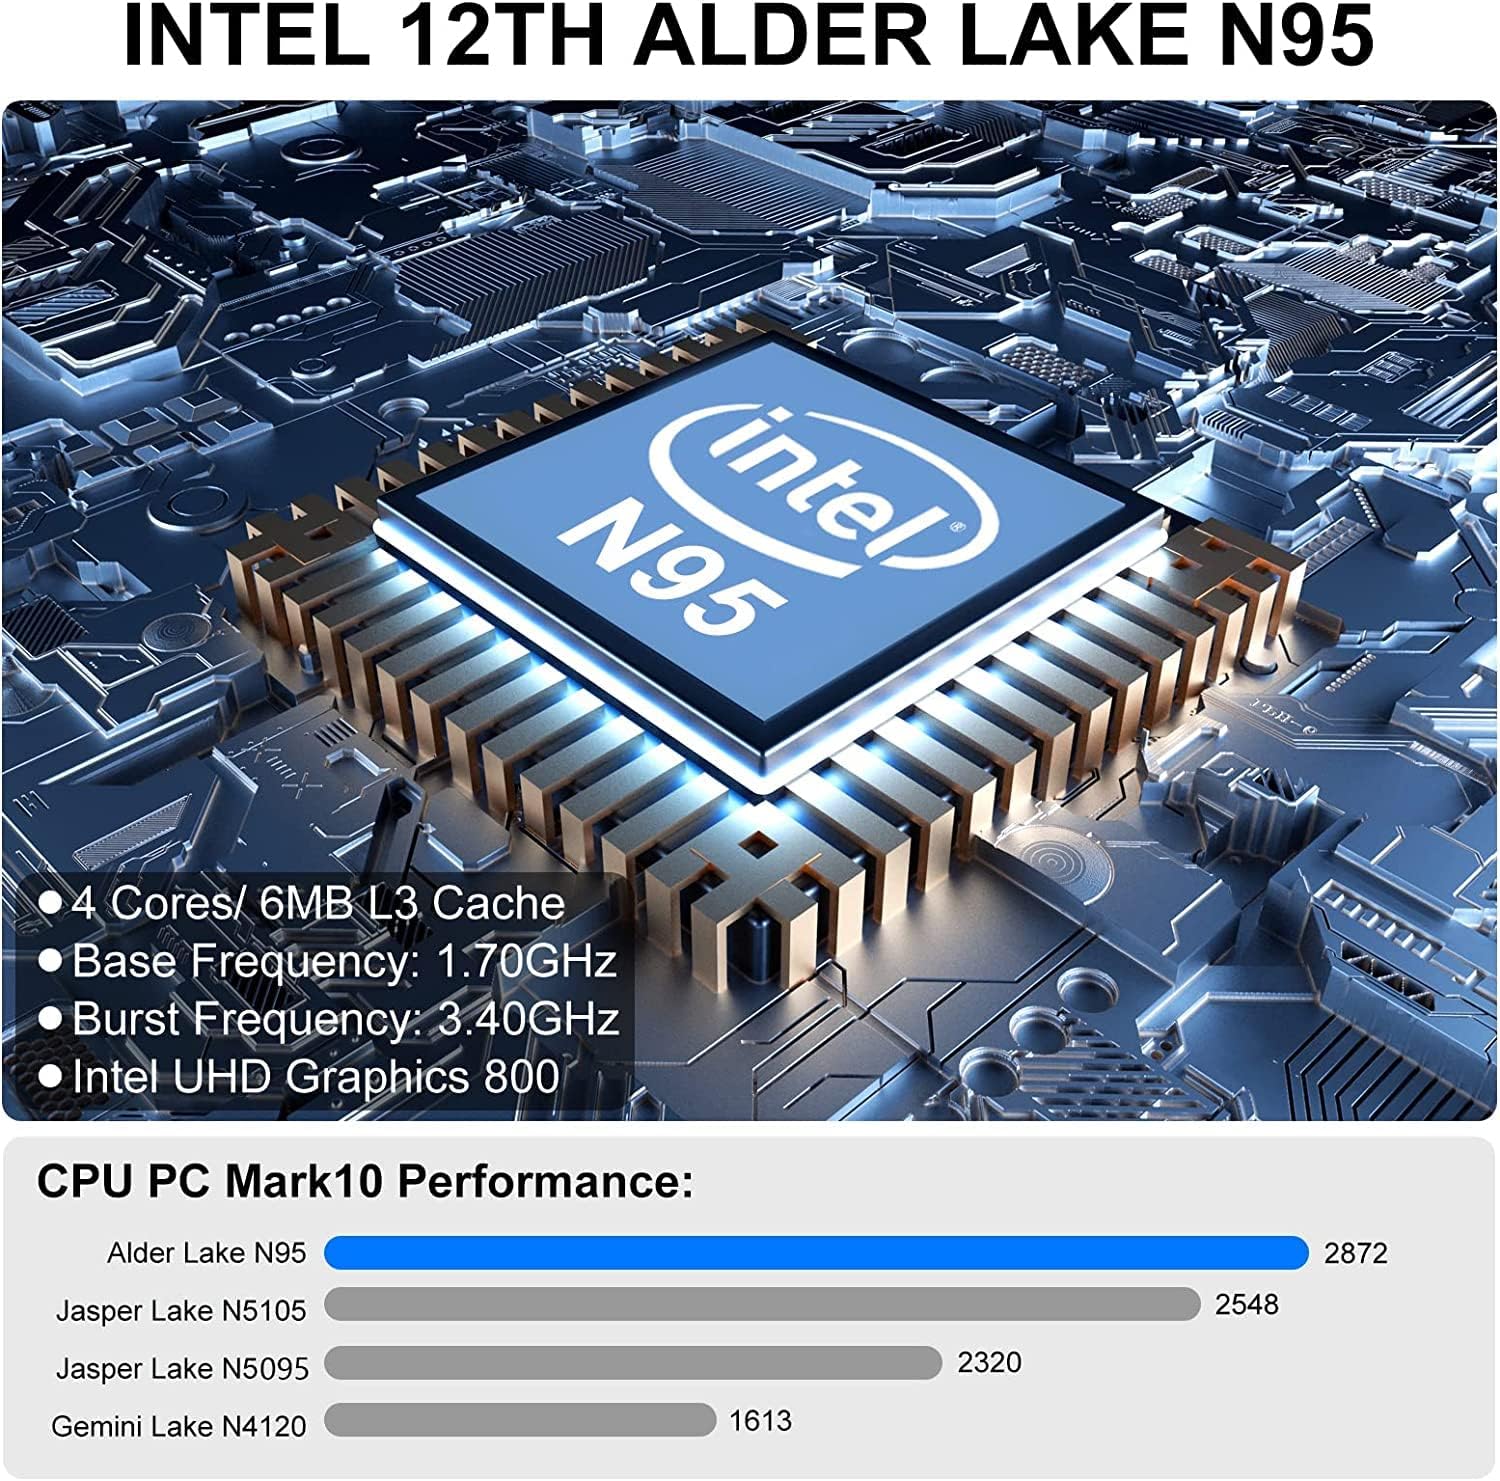 KAMRUI Mini PC,12th Intel Alder Lake- N95 up to 3.4 GHz,16GB RAM+512GB M.2 SSD, Mini Computer Support 2.5 SATA SSD,WiFi 2.4G/5G,Bluetooth4.2,Triple Display,4K